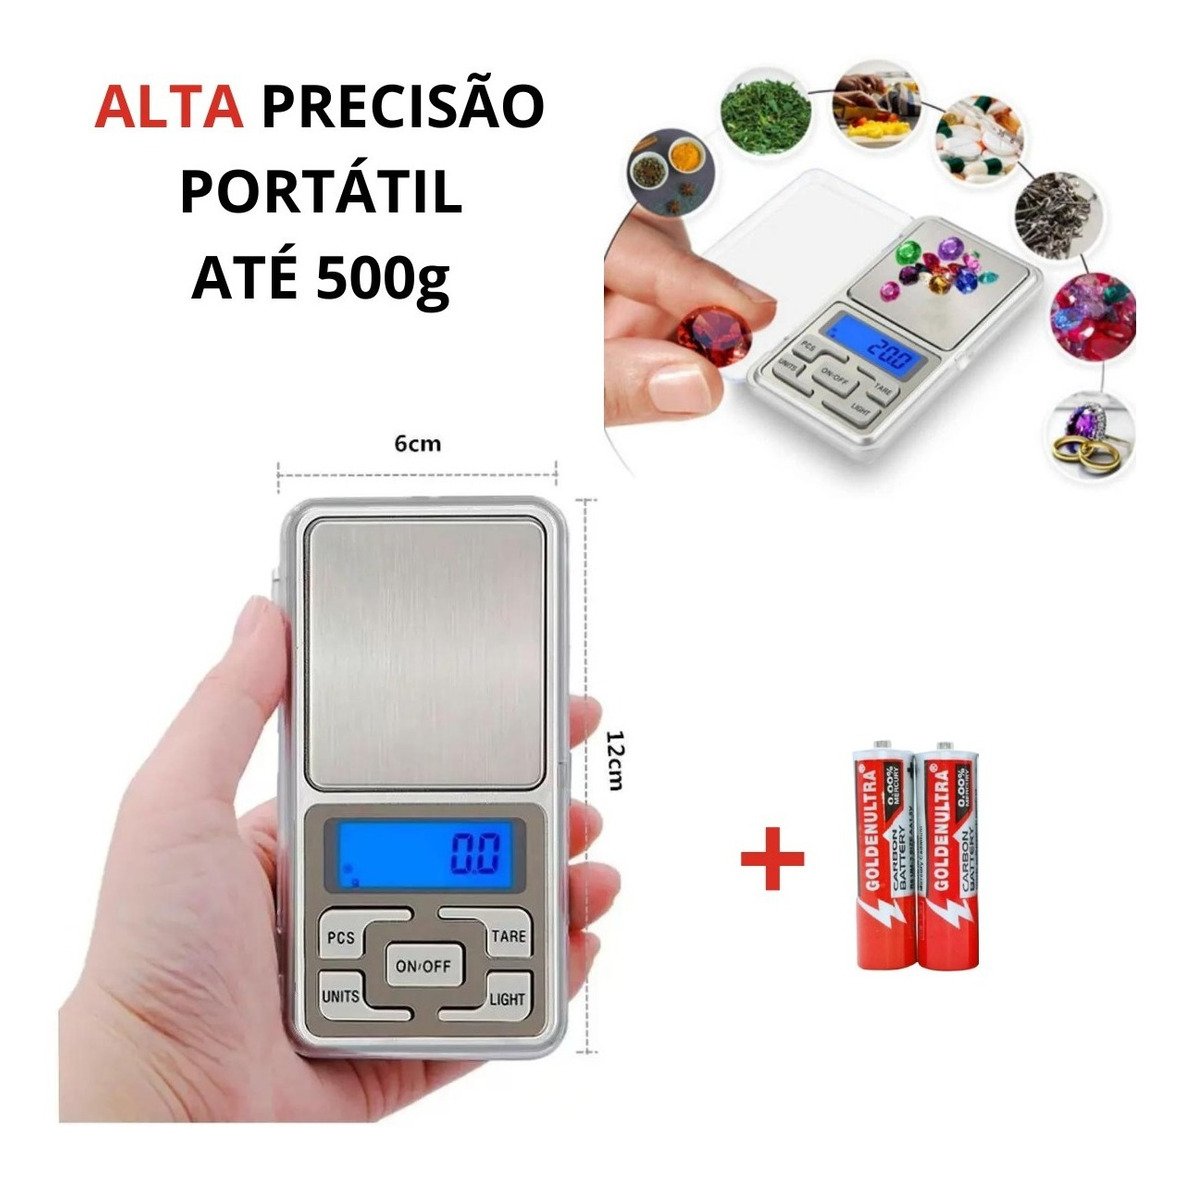 Mini Balança Digital Alta Precisão De Bolso Portátil 500g - 4